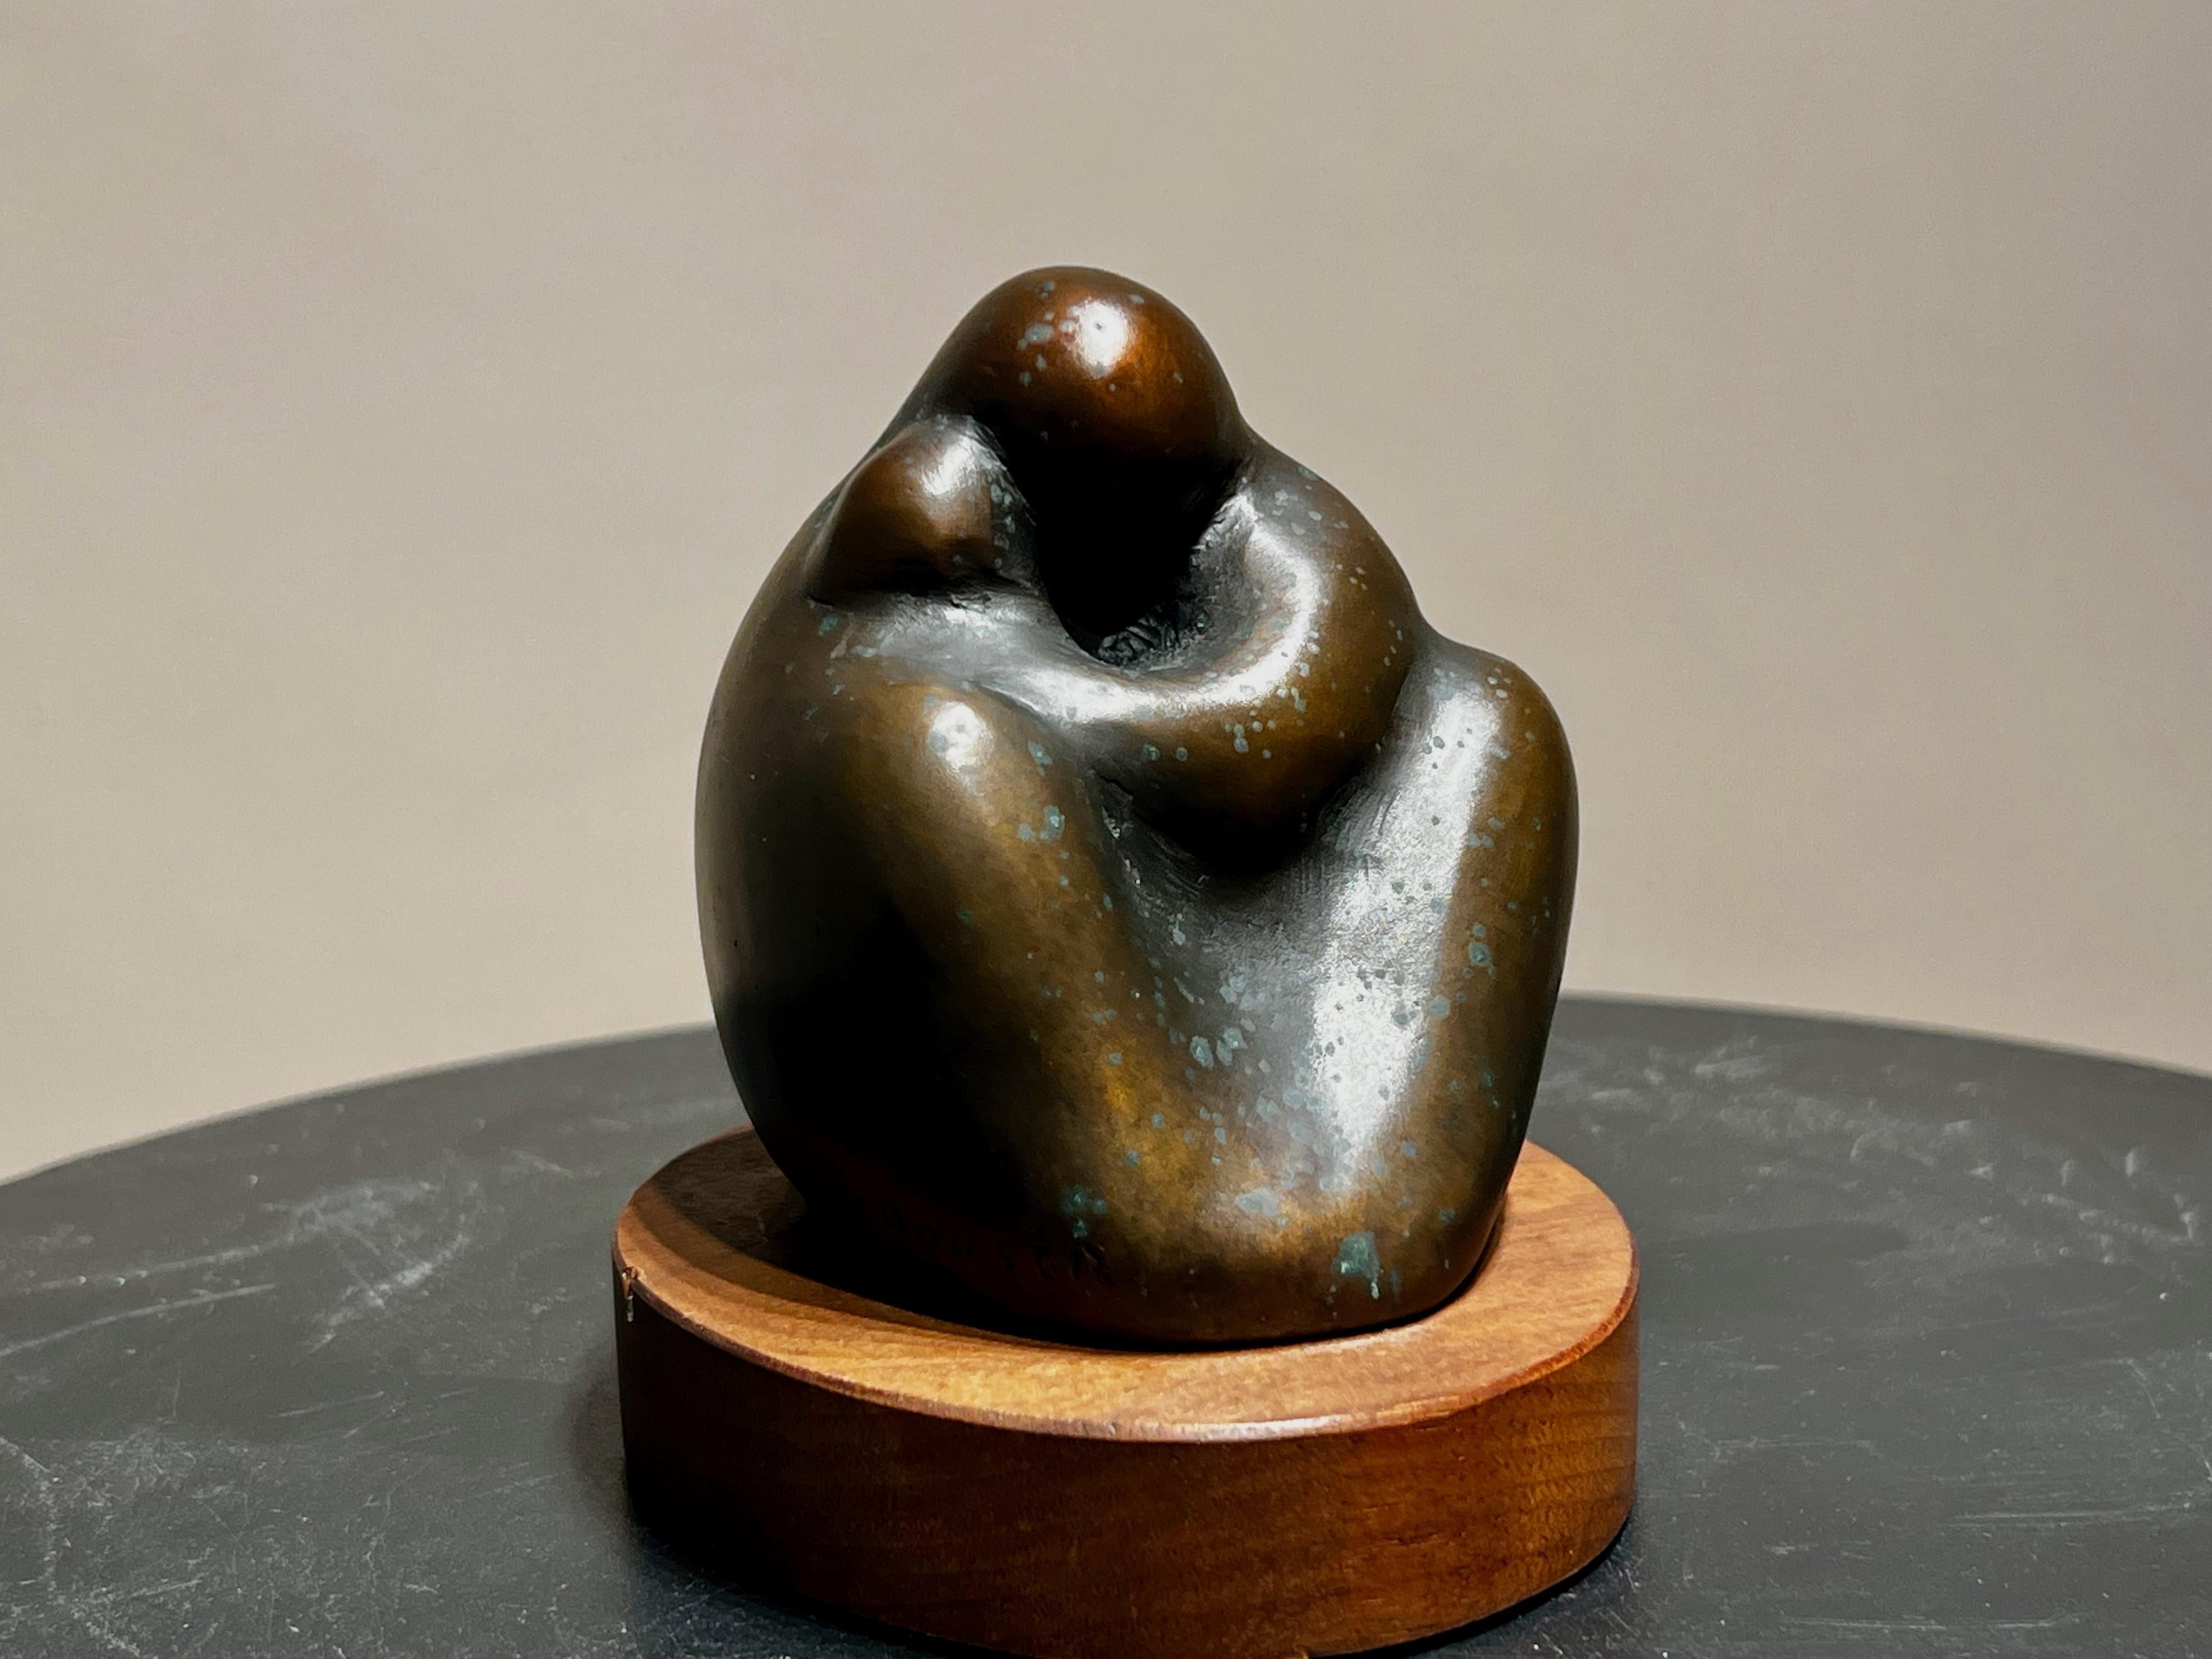 abstract bronze sculptures